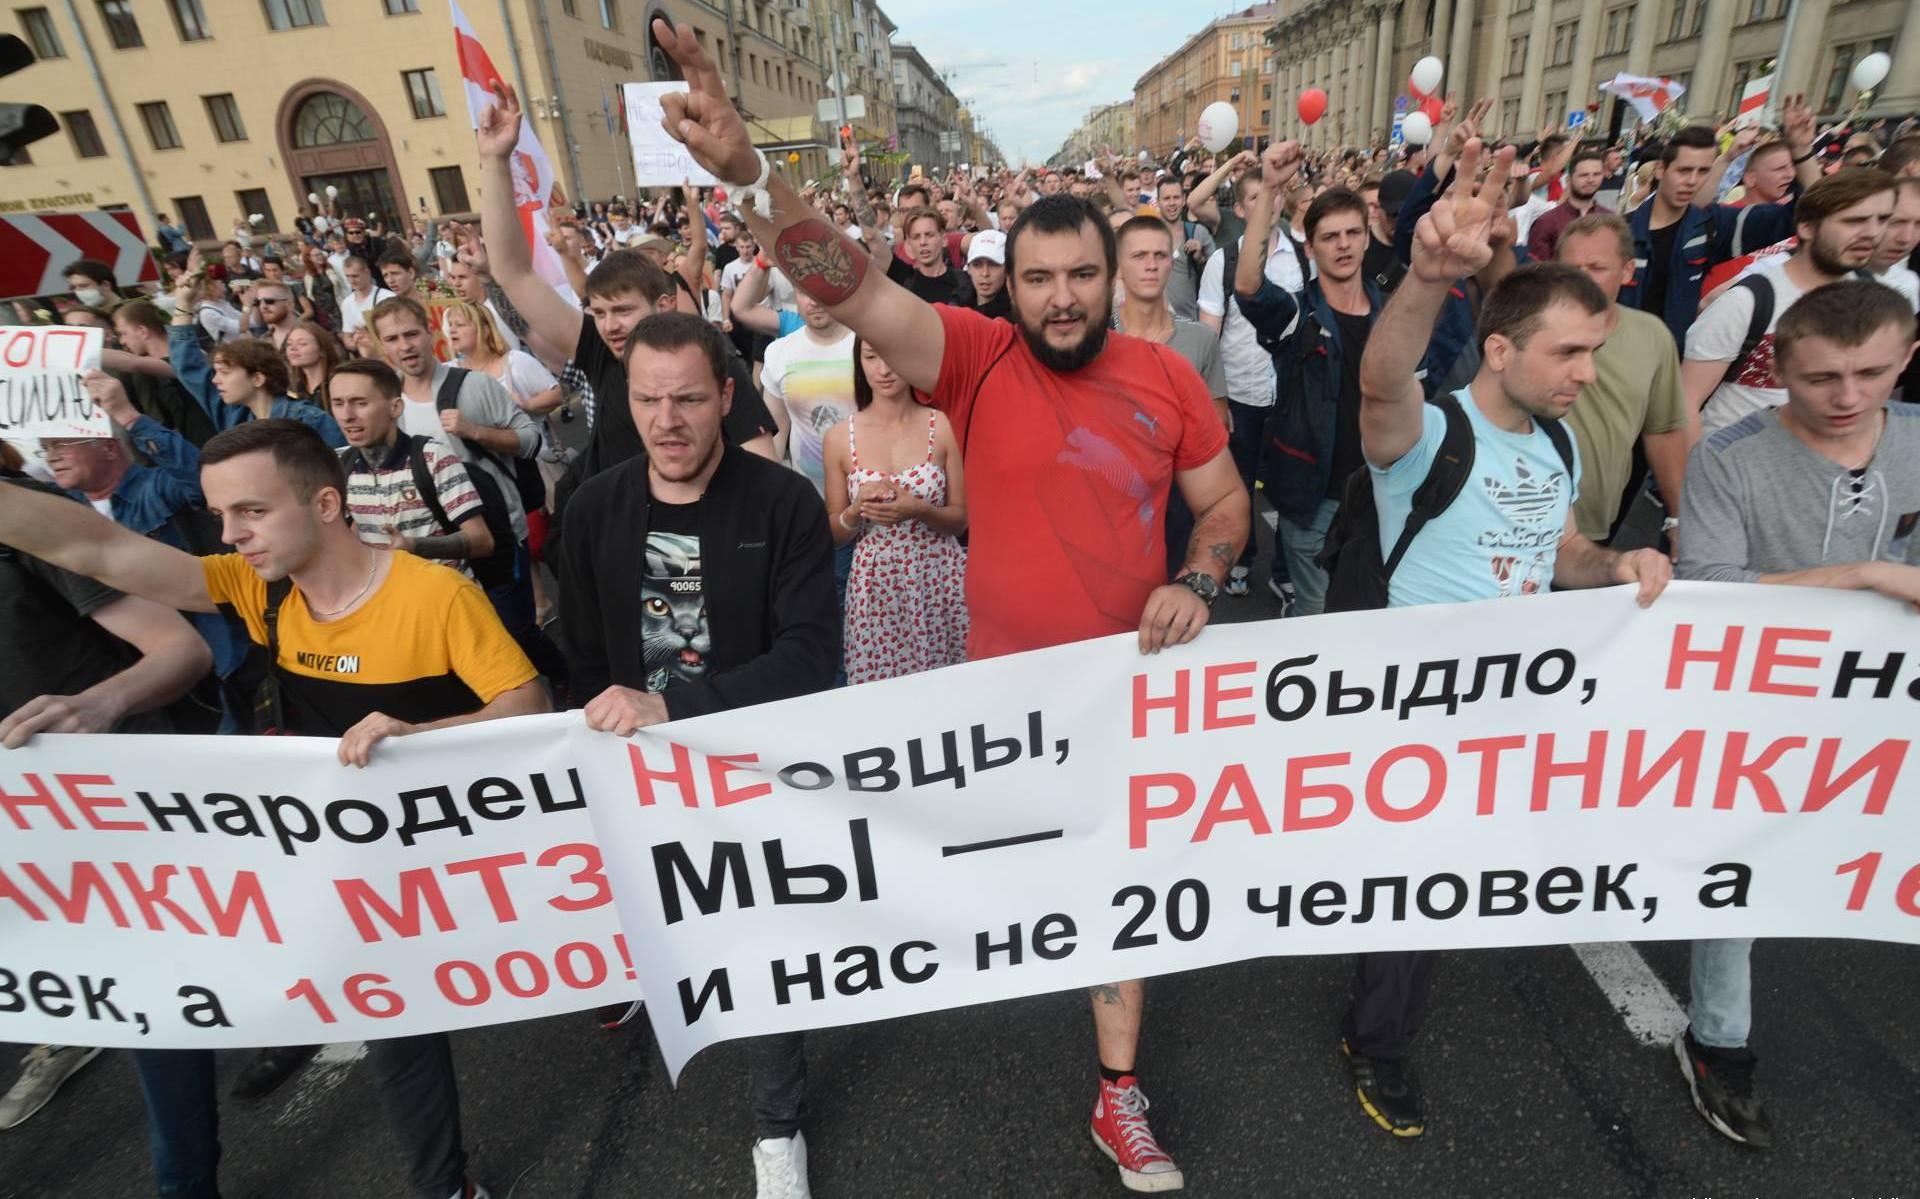 Duizenden mensen bij vreedzame protesten in Wit-Rusland